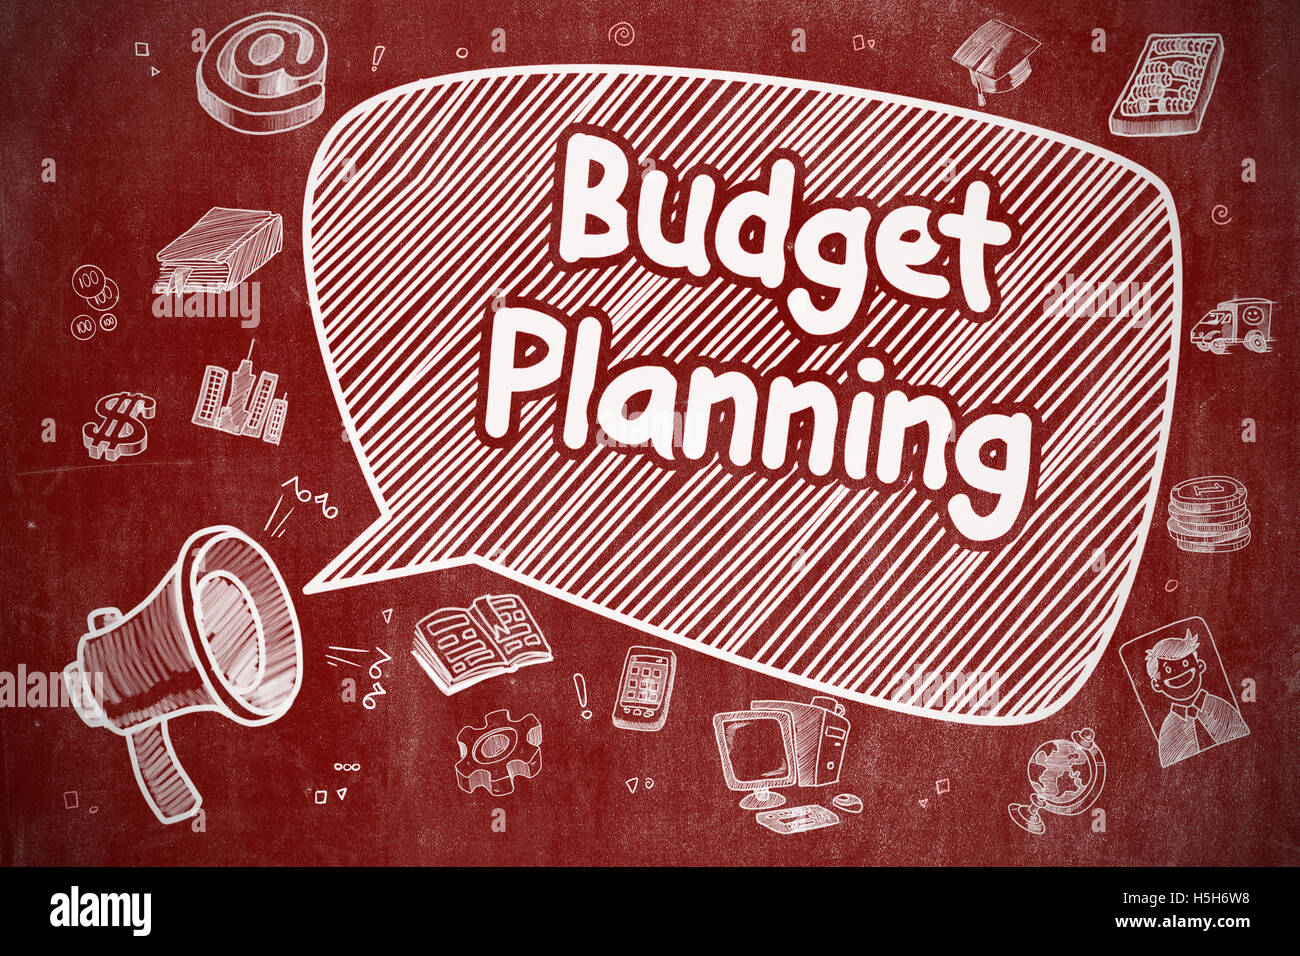 La planification budgétaire - Doodle Illustration sur rouge au tableau. Banque D'Images